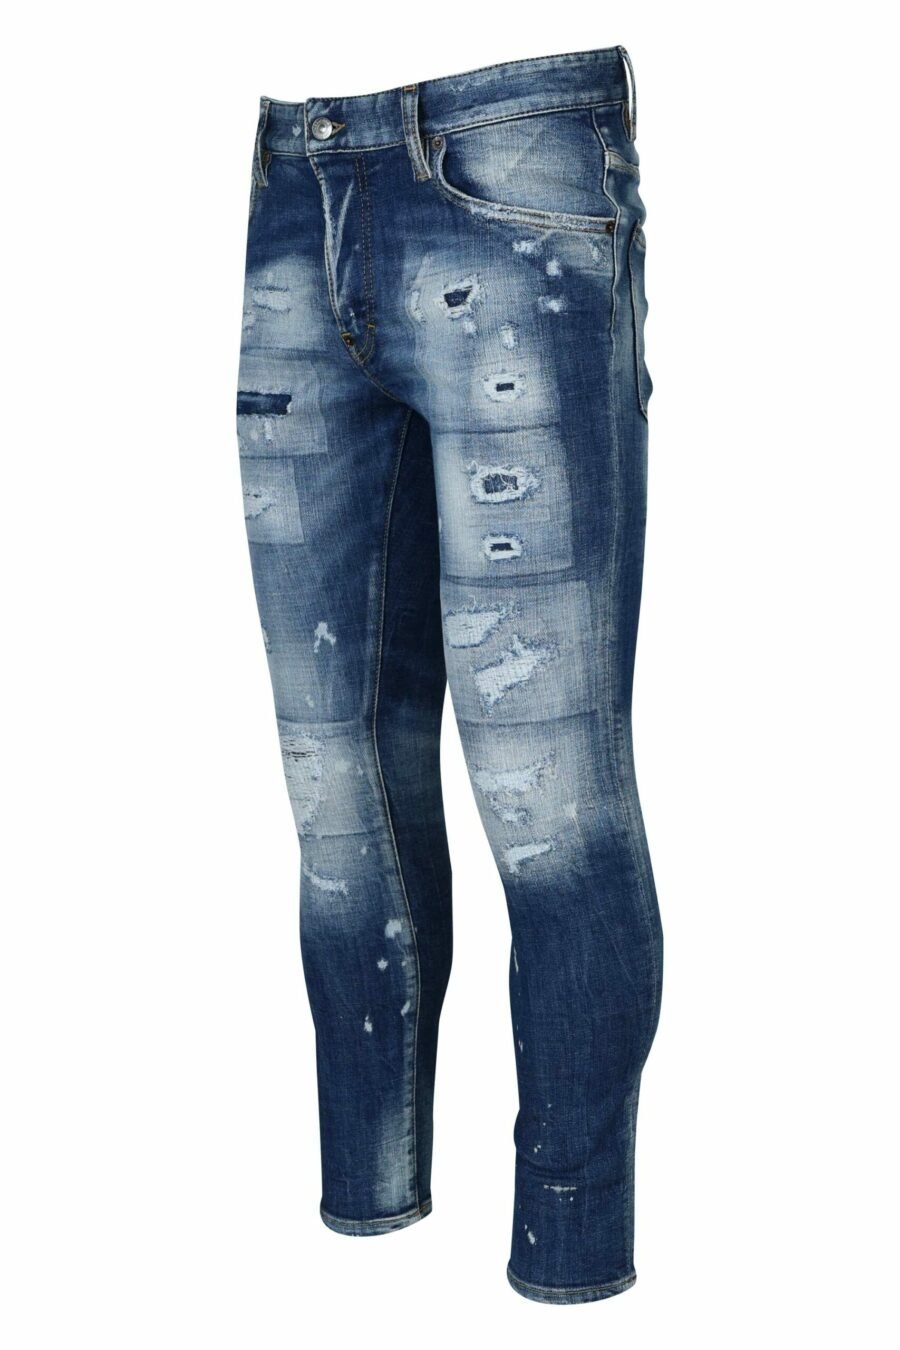 Jean bleu "super twinky jean" avec déchirures - 8054148339029 1 échelle